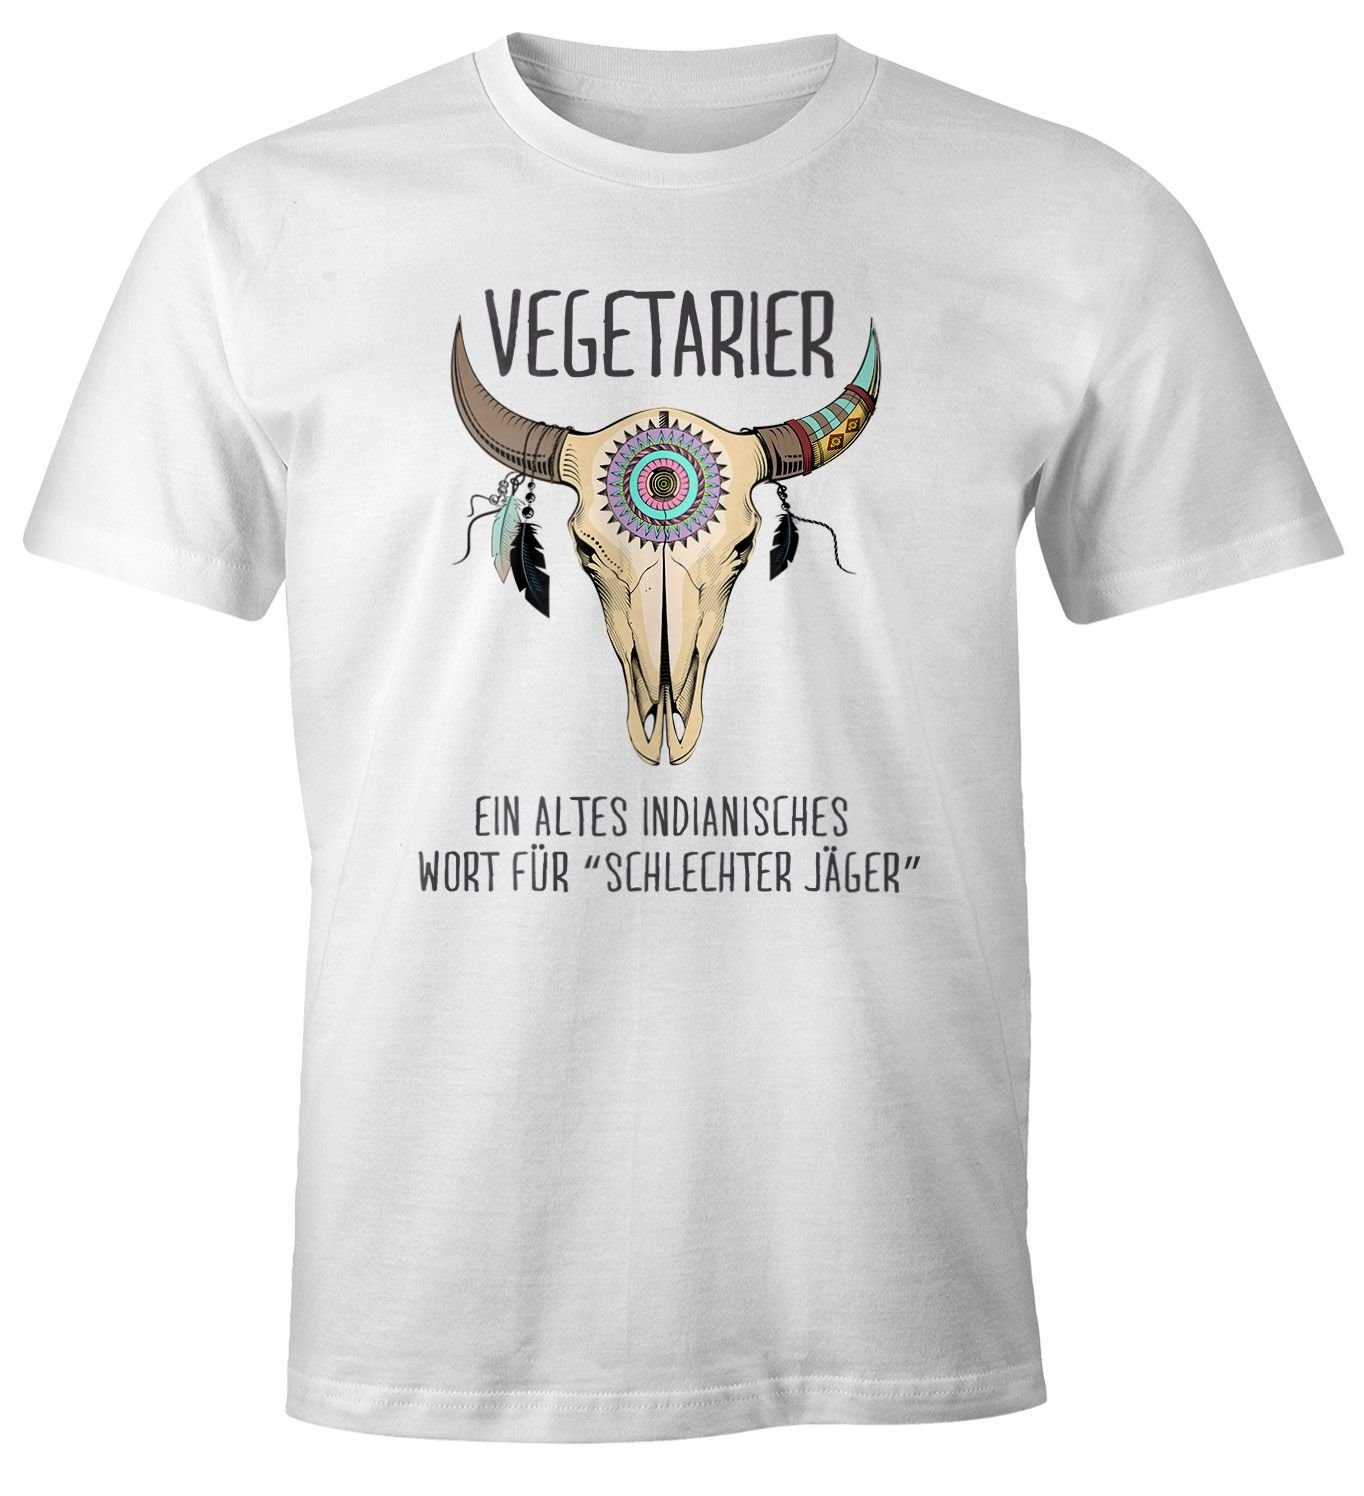 MoonWorks Print-Shirt Herren T-Shirt Vegetarier / Veganer Schlechter Jäger Spruch Skull lustig Fun-Shirt Moonworks® mit Print Vegetarier weiß